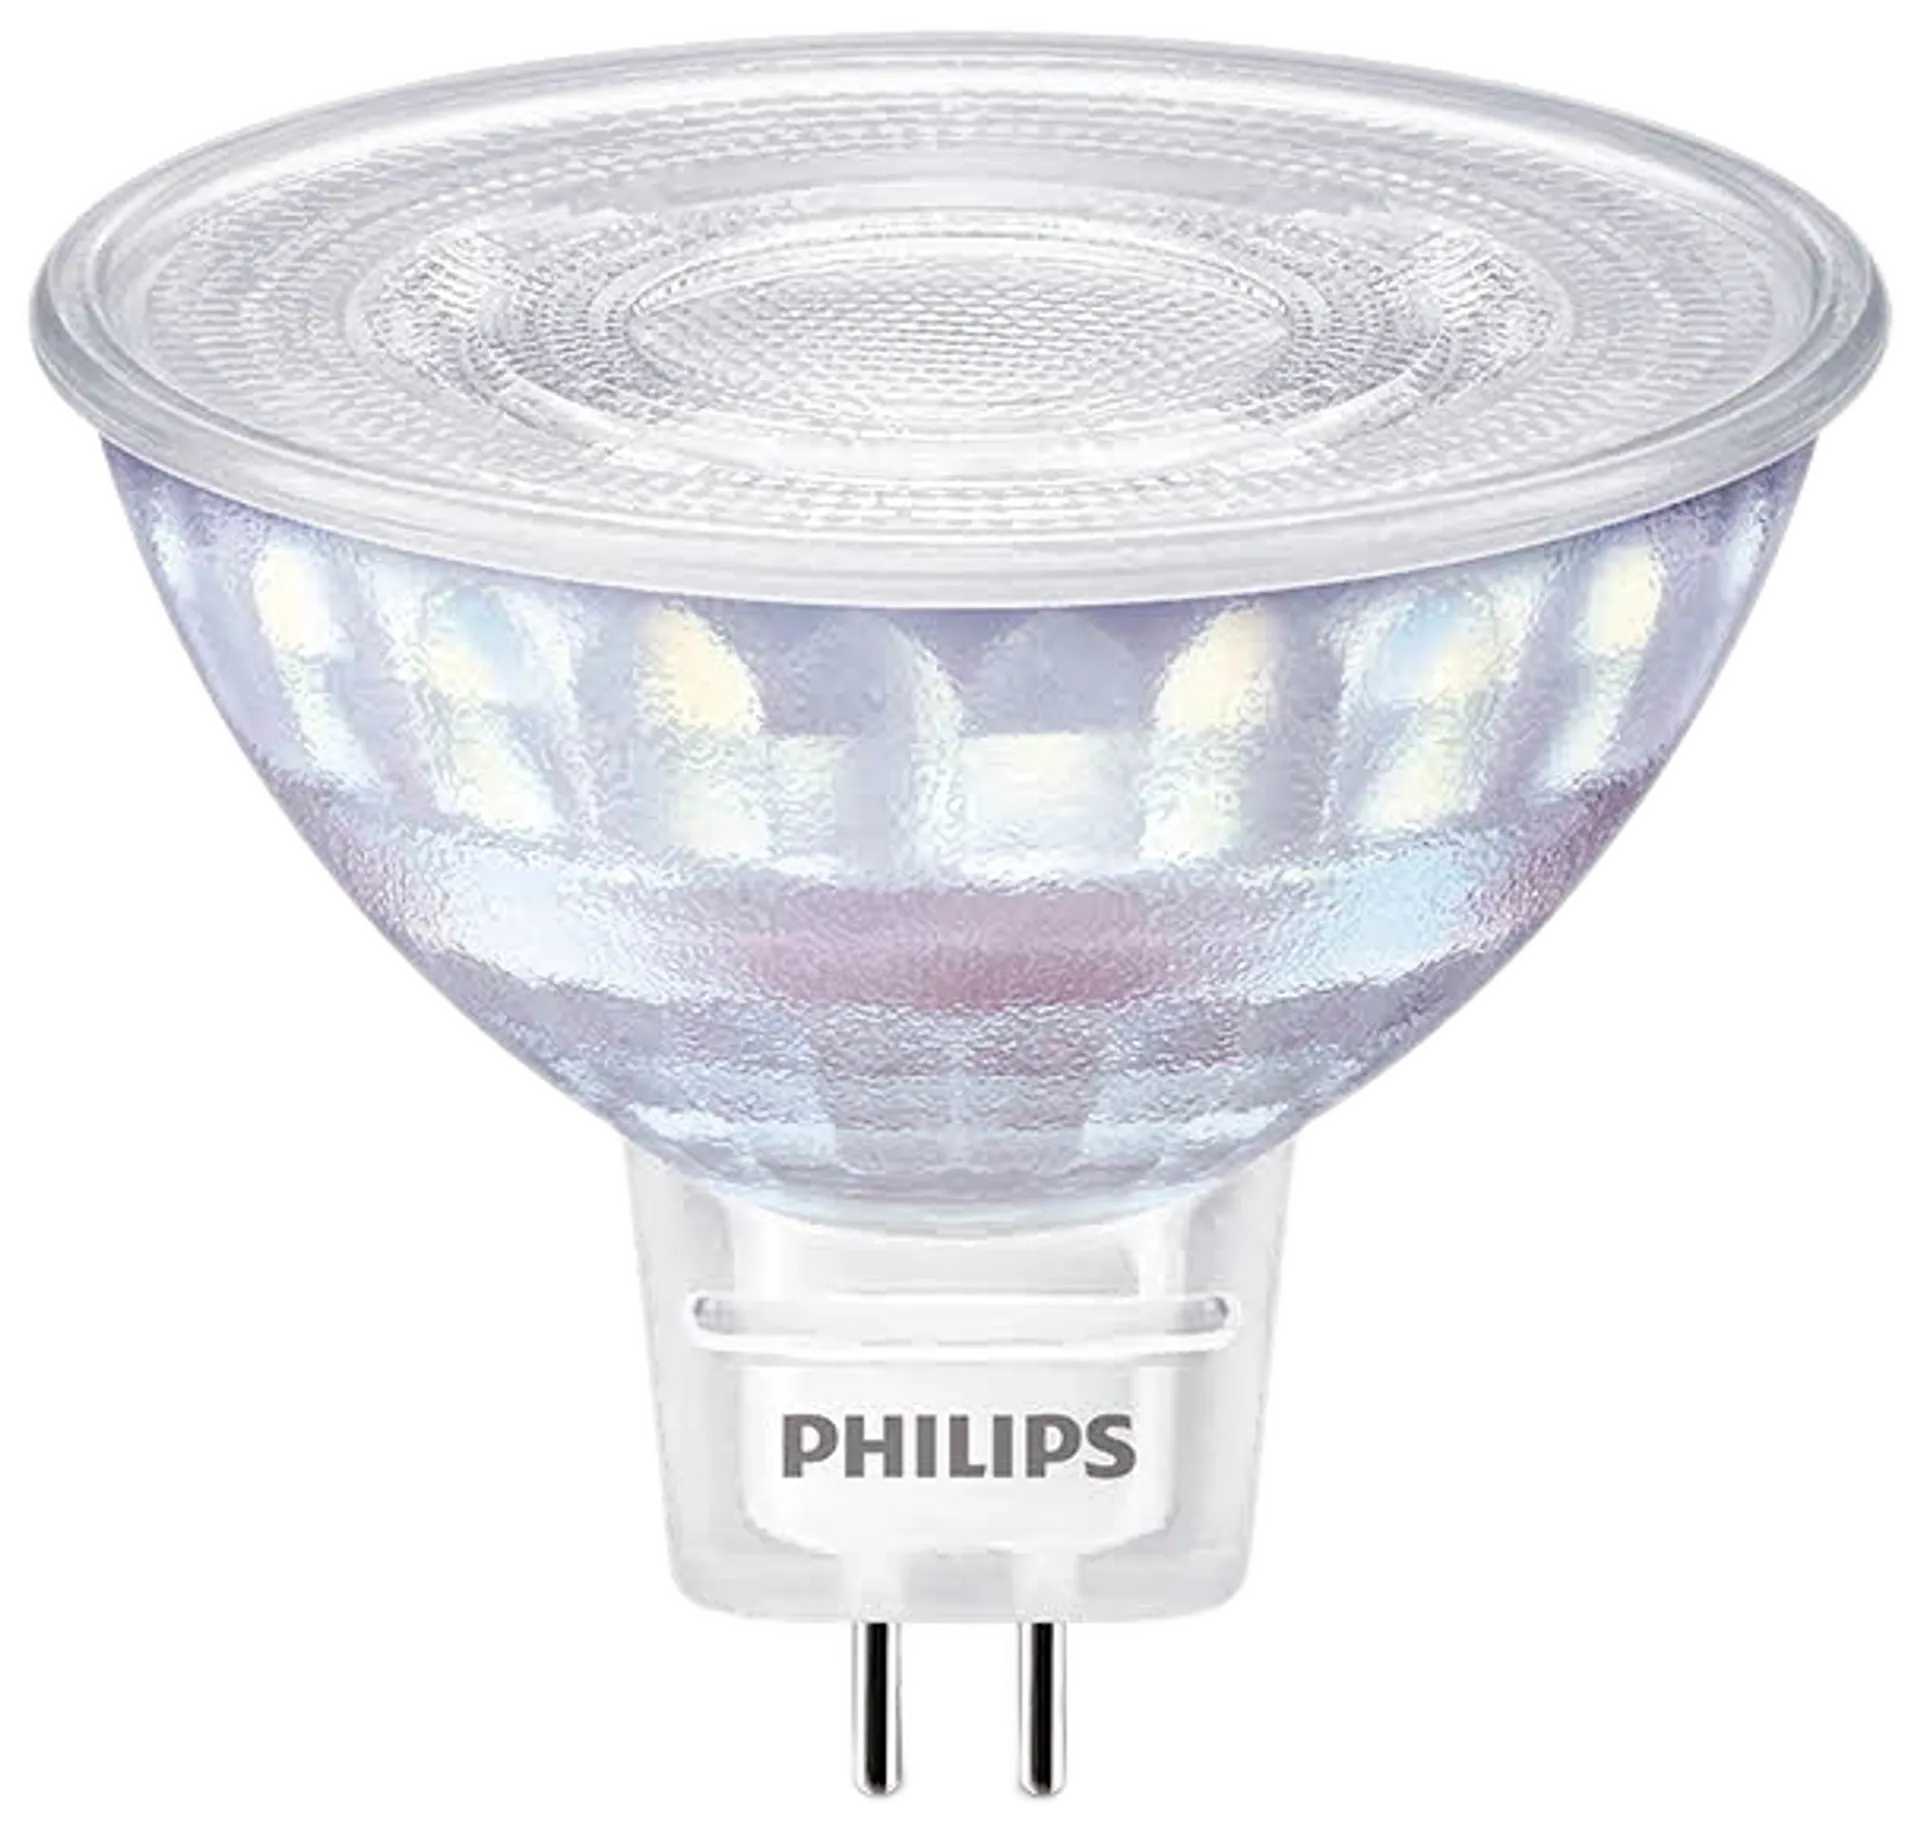 Philips LED kohdelamppu GU5.3 7W 12V 36D WGD - 1